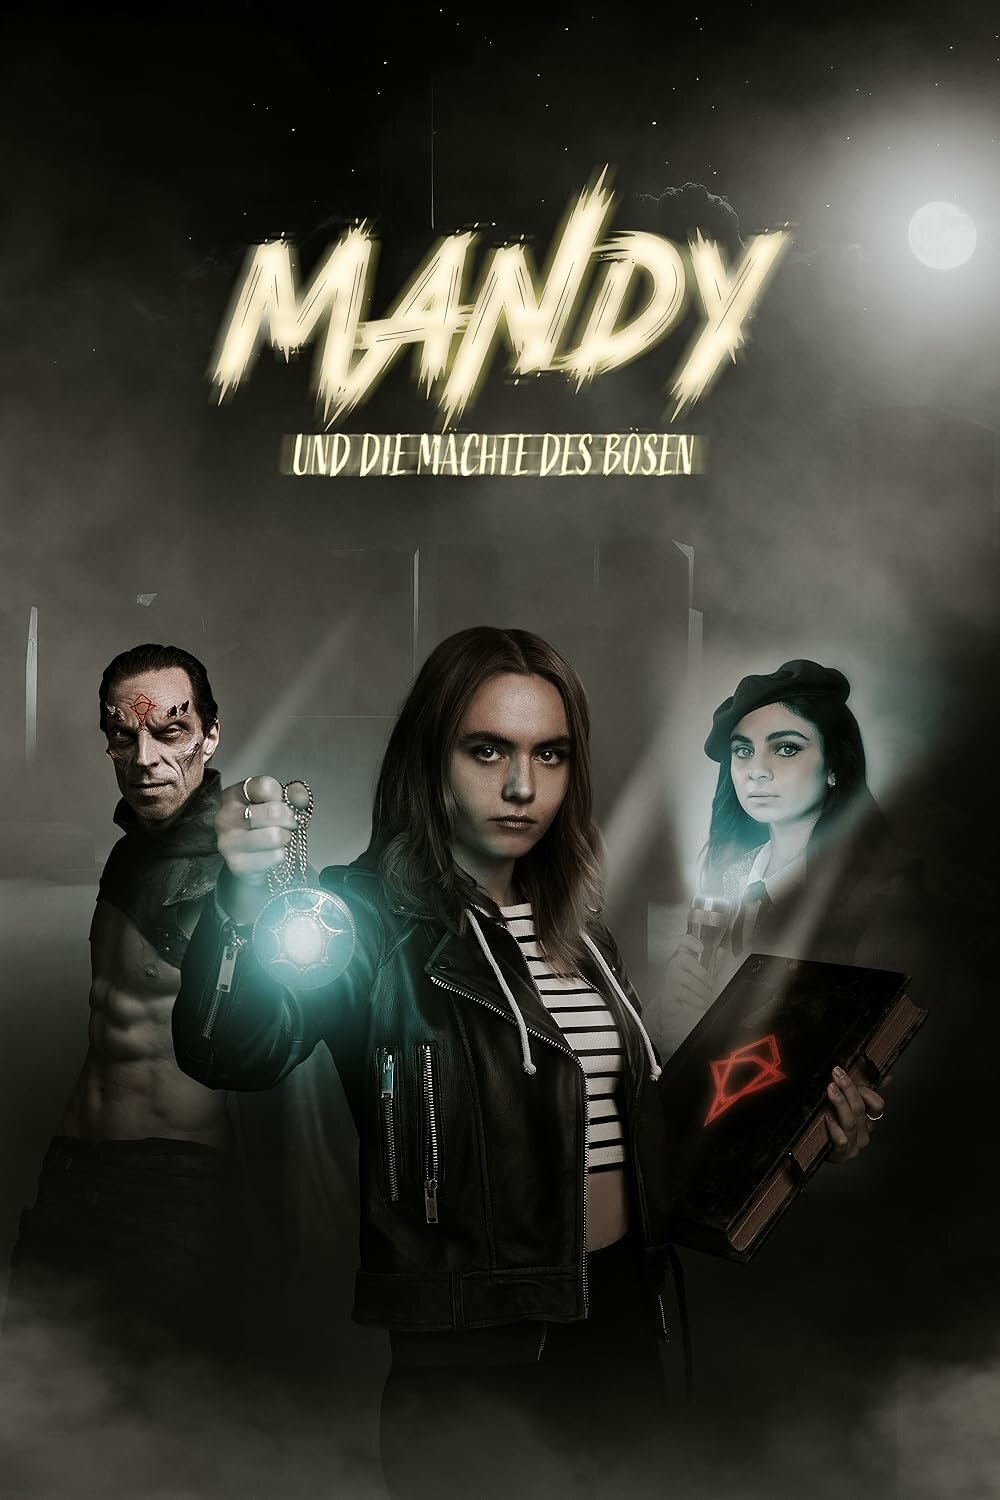 Mandy und die Mächte des Bösen ne zaman